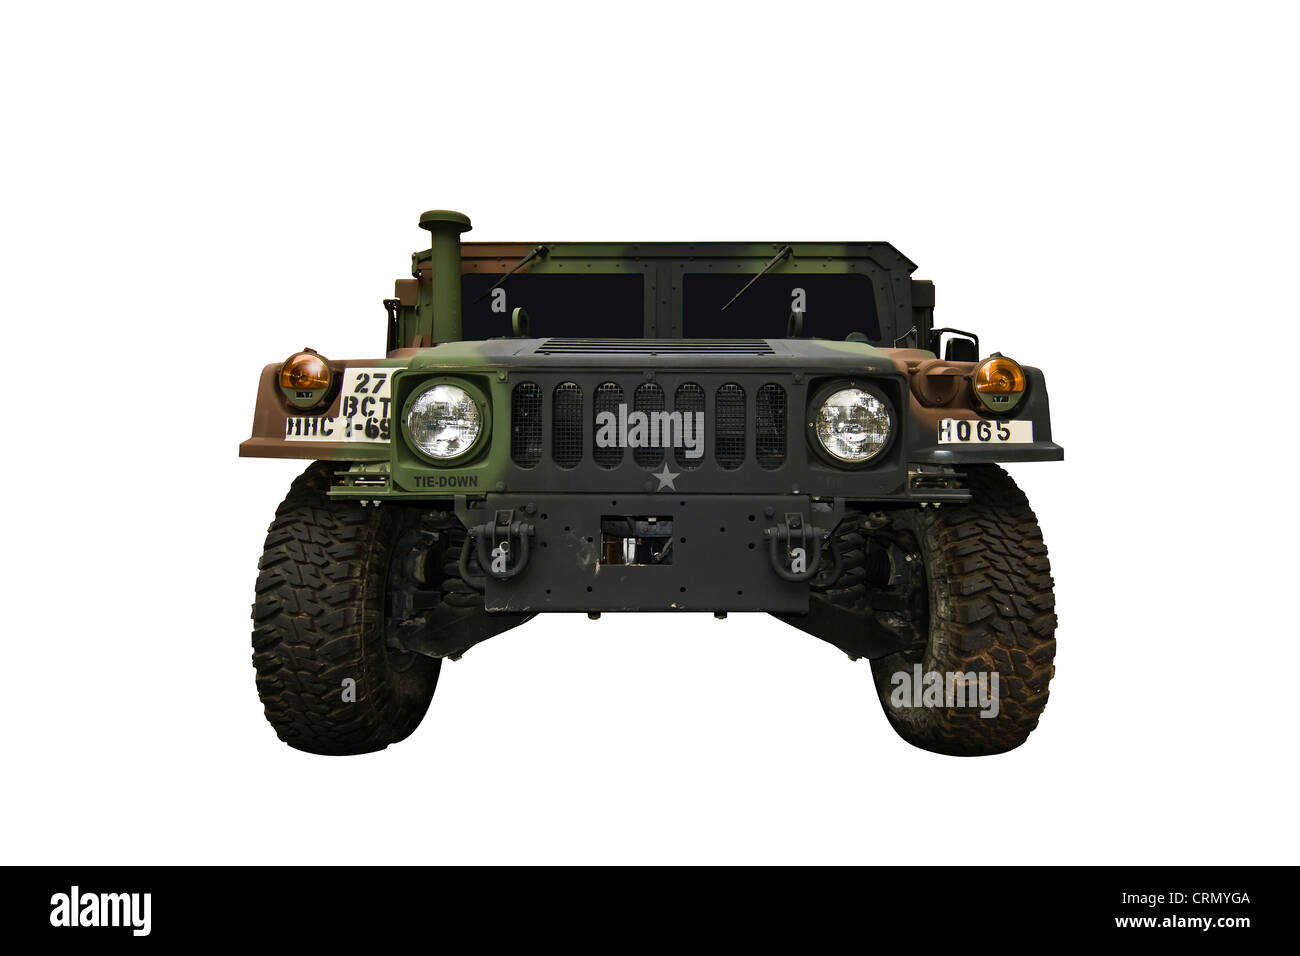 Tagliare fuori. Elevata mobilità multiuso di veicolo su ruote (HMMWV o Humvee). Un militari USA veicolo 4WD creato da AM generale. Foto Stock